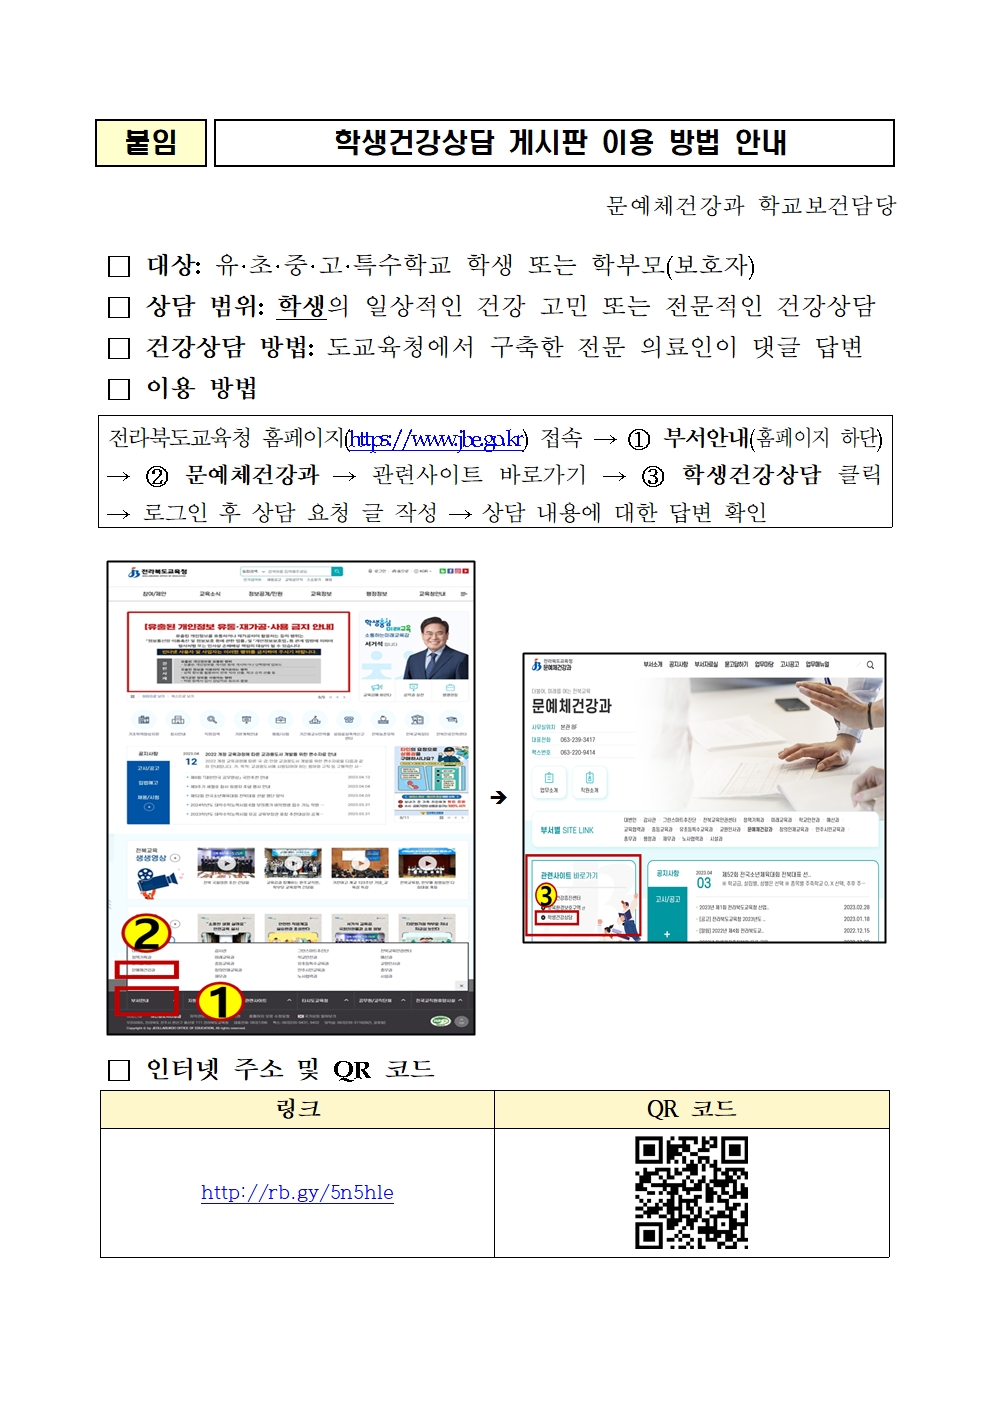 리로-4.25-학생건강상담(온라인) 게시판 이용방법 안내001